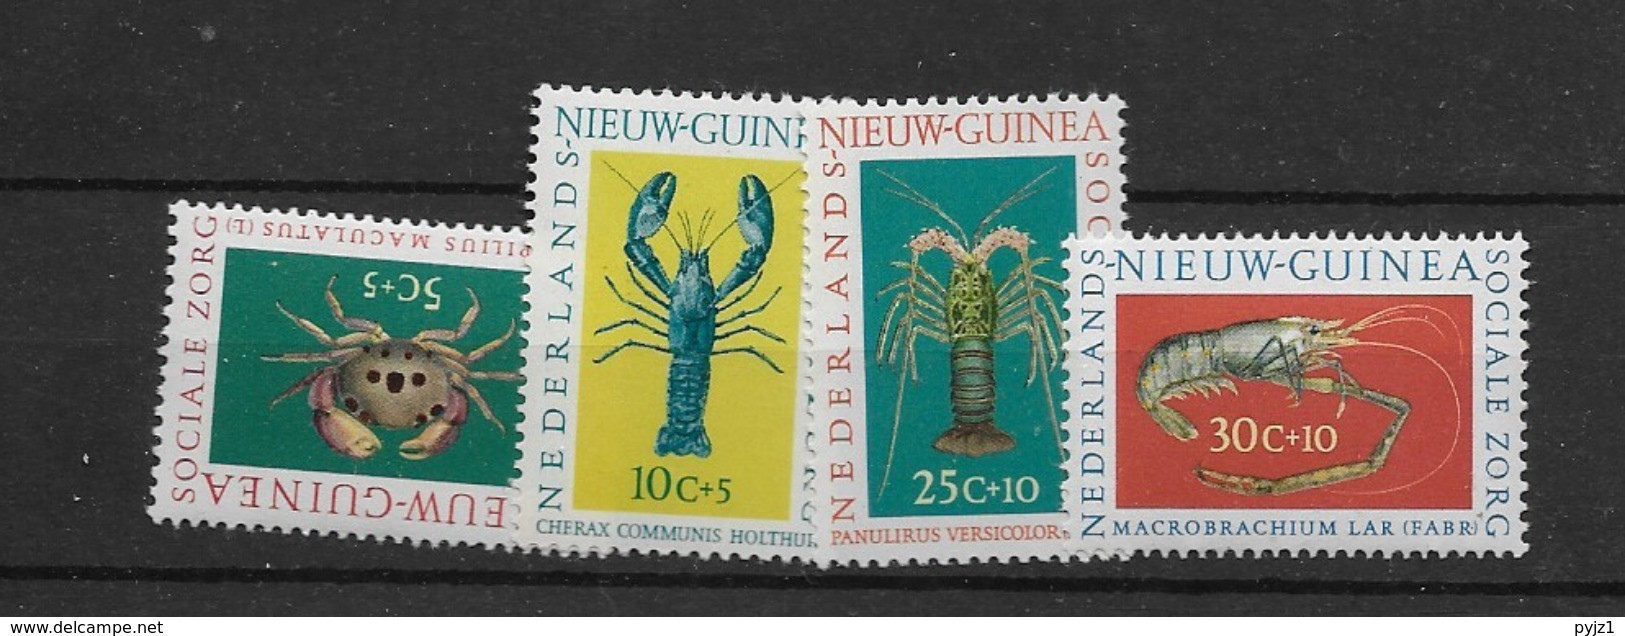 1962 Nederlands Nieuw Guinea, Postfris** - Schalentiere